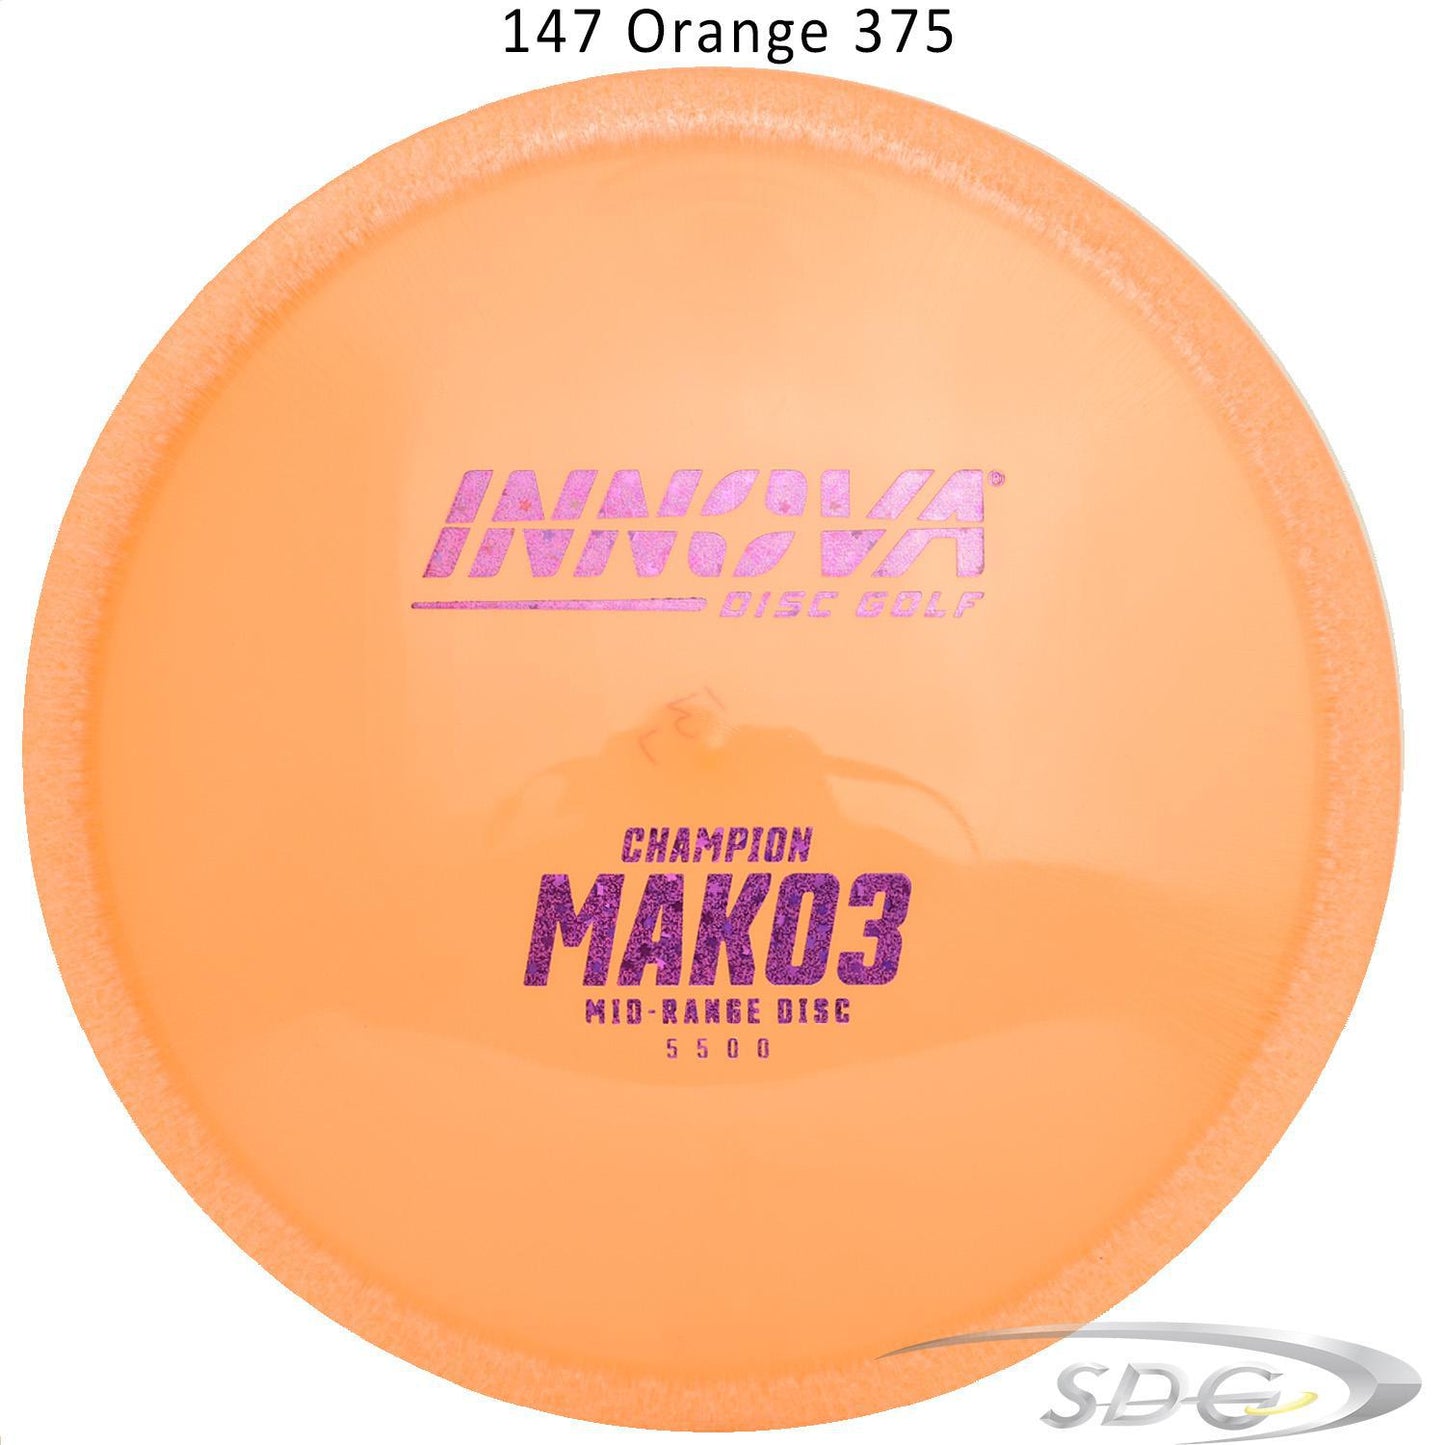 innova-champion-mako3-disc-golf-mid-range 147 Orange 375 